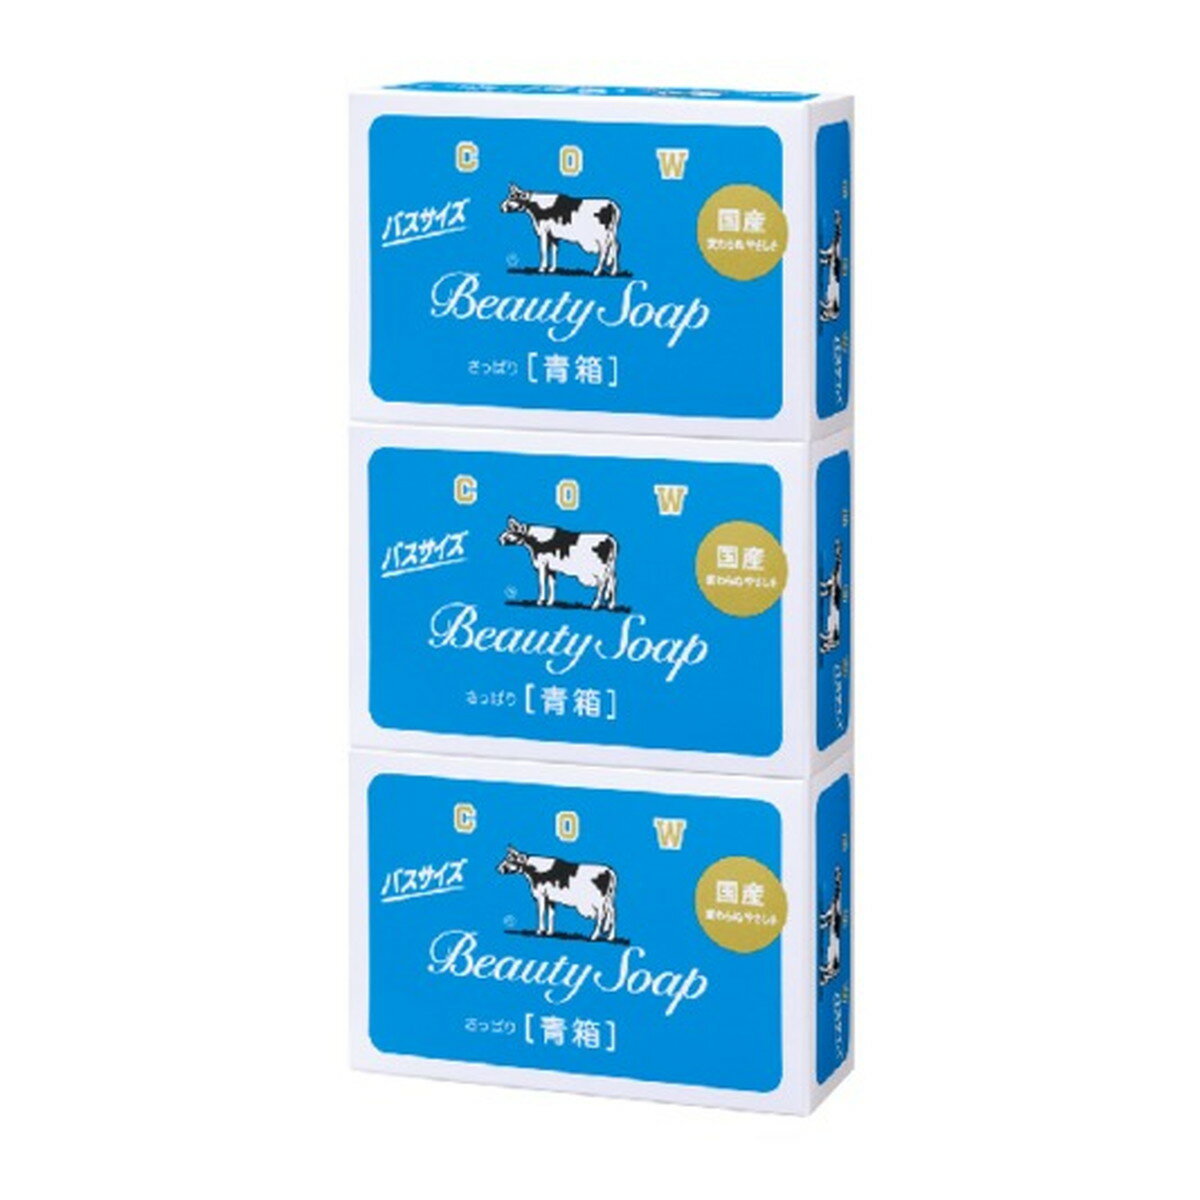 【送料込】牛乳石鹸共進社 カウブランド 青箱 バスサイズ 130g × 3コパック 1個